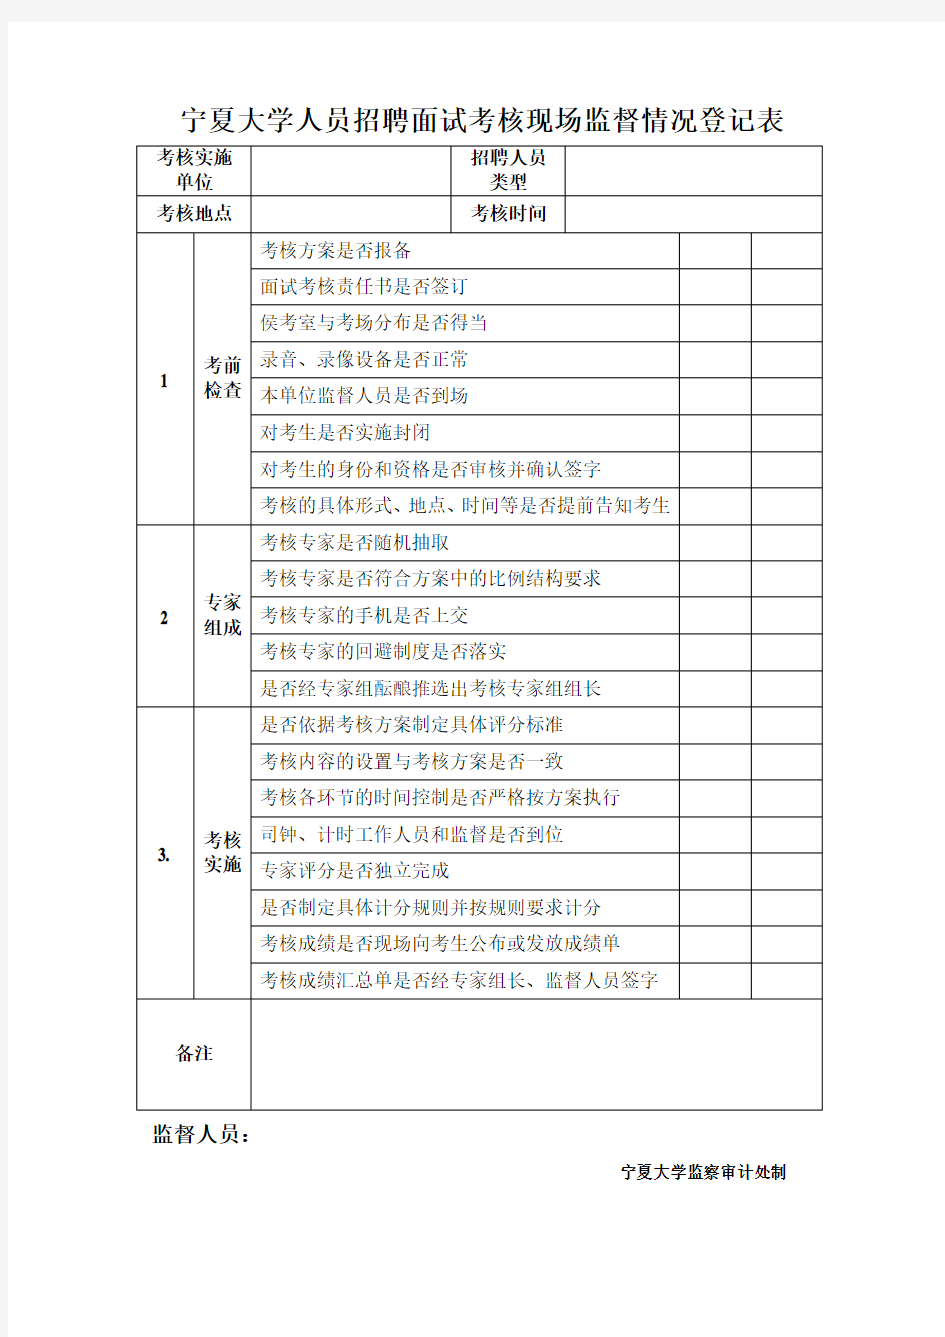 宁夏大学人员招聘面试考核现场监督情况登记表